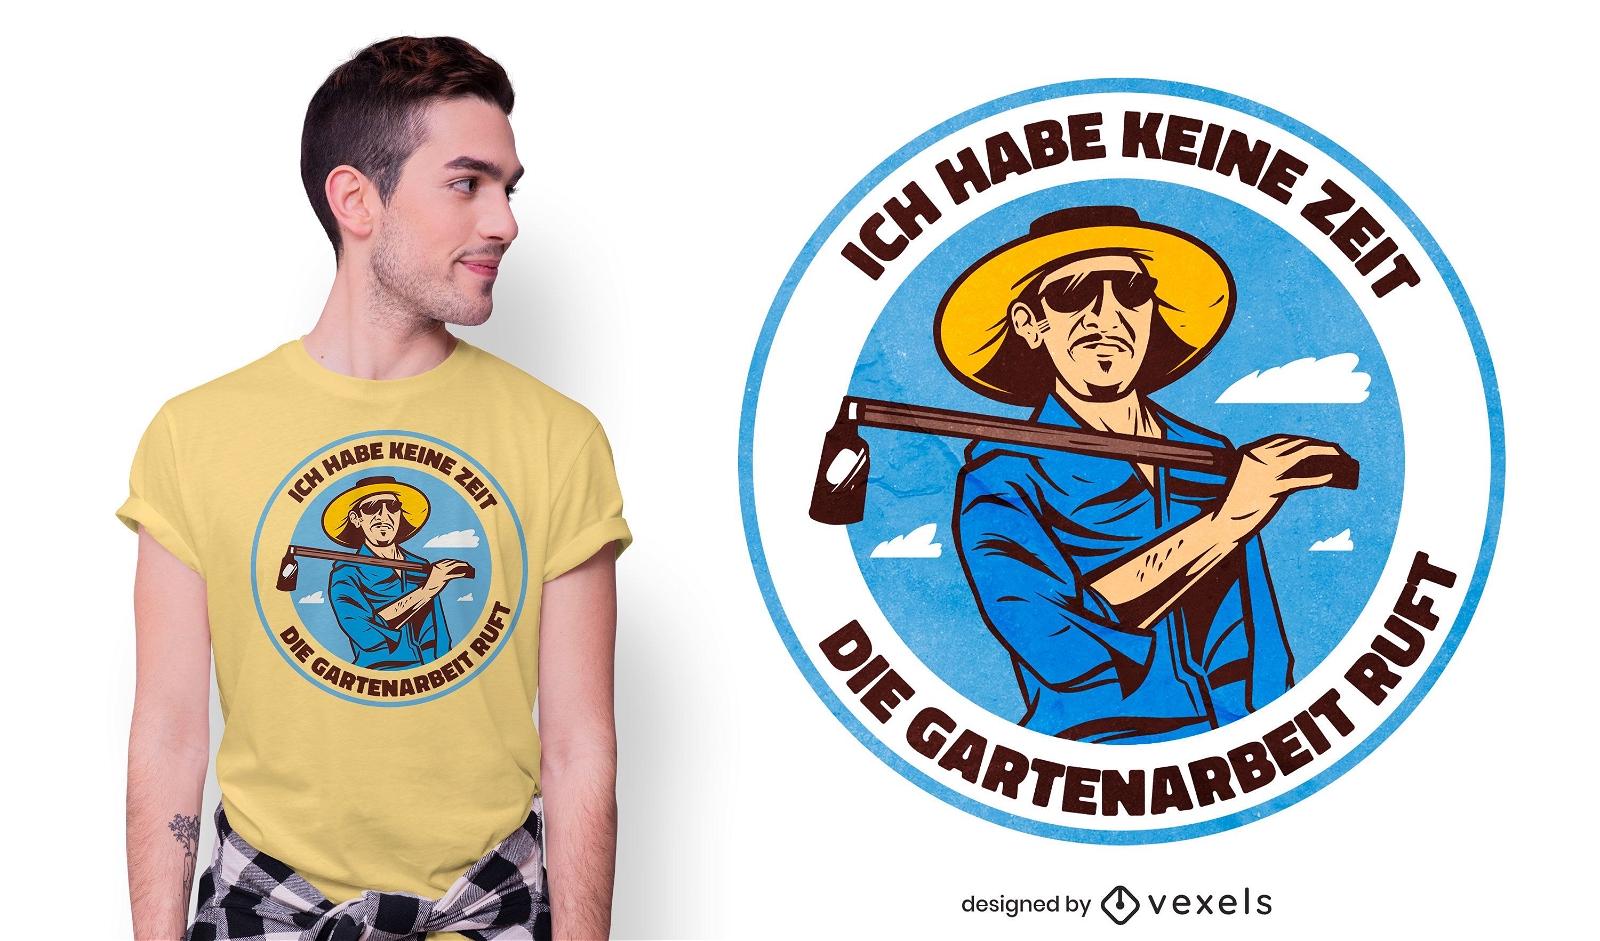 Gartenzitat deutsches T-Shirt Design